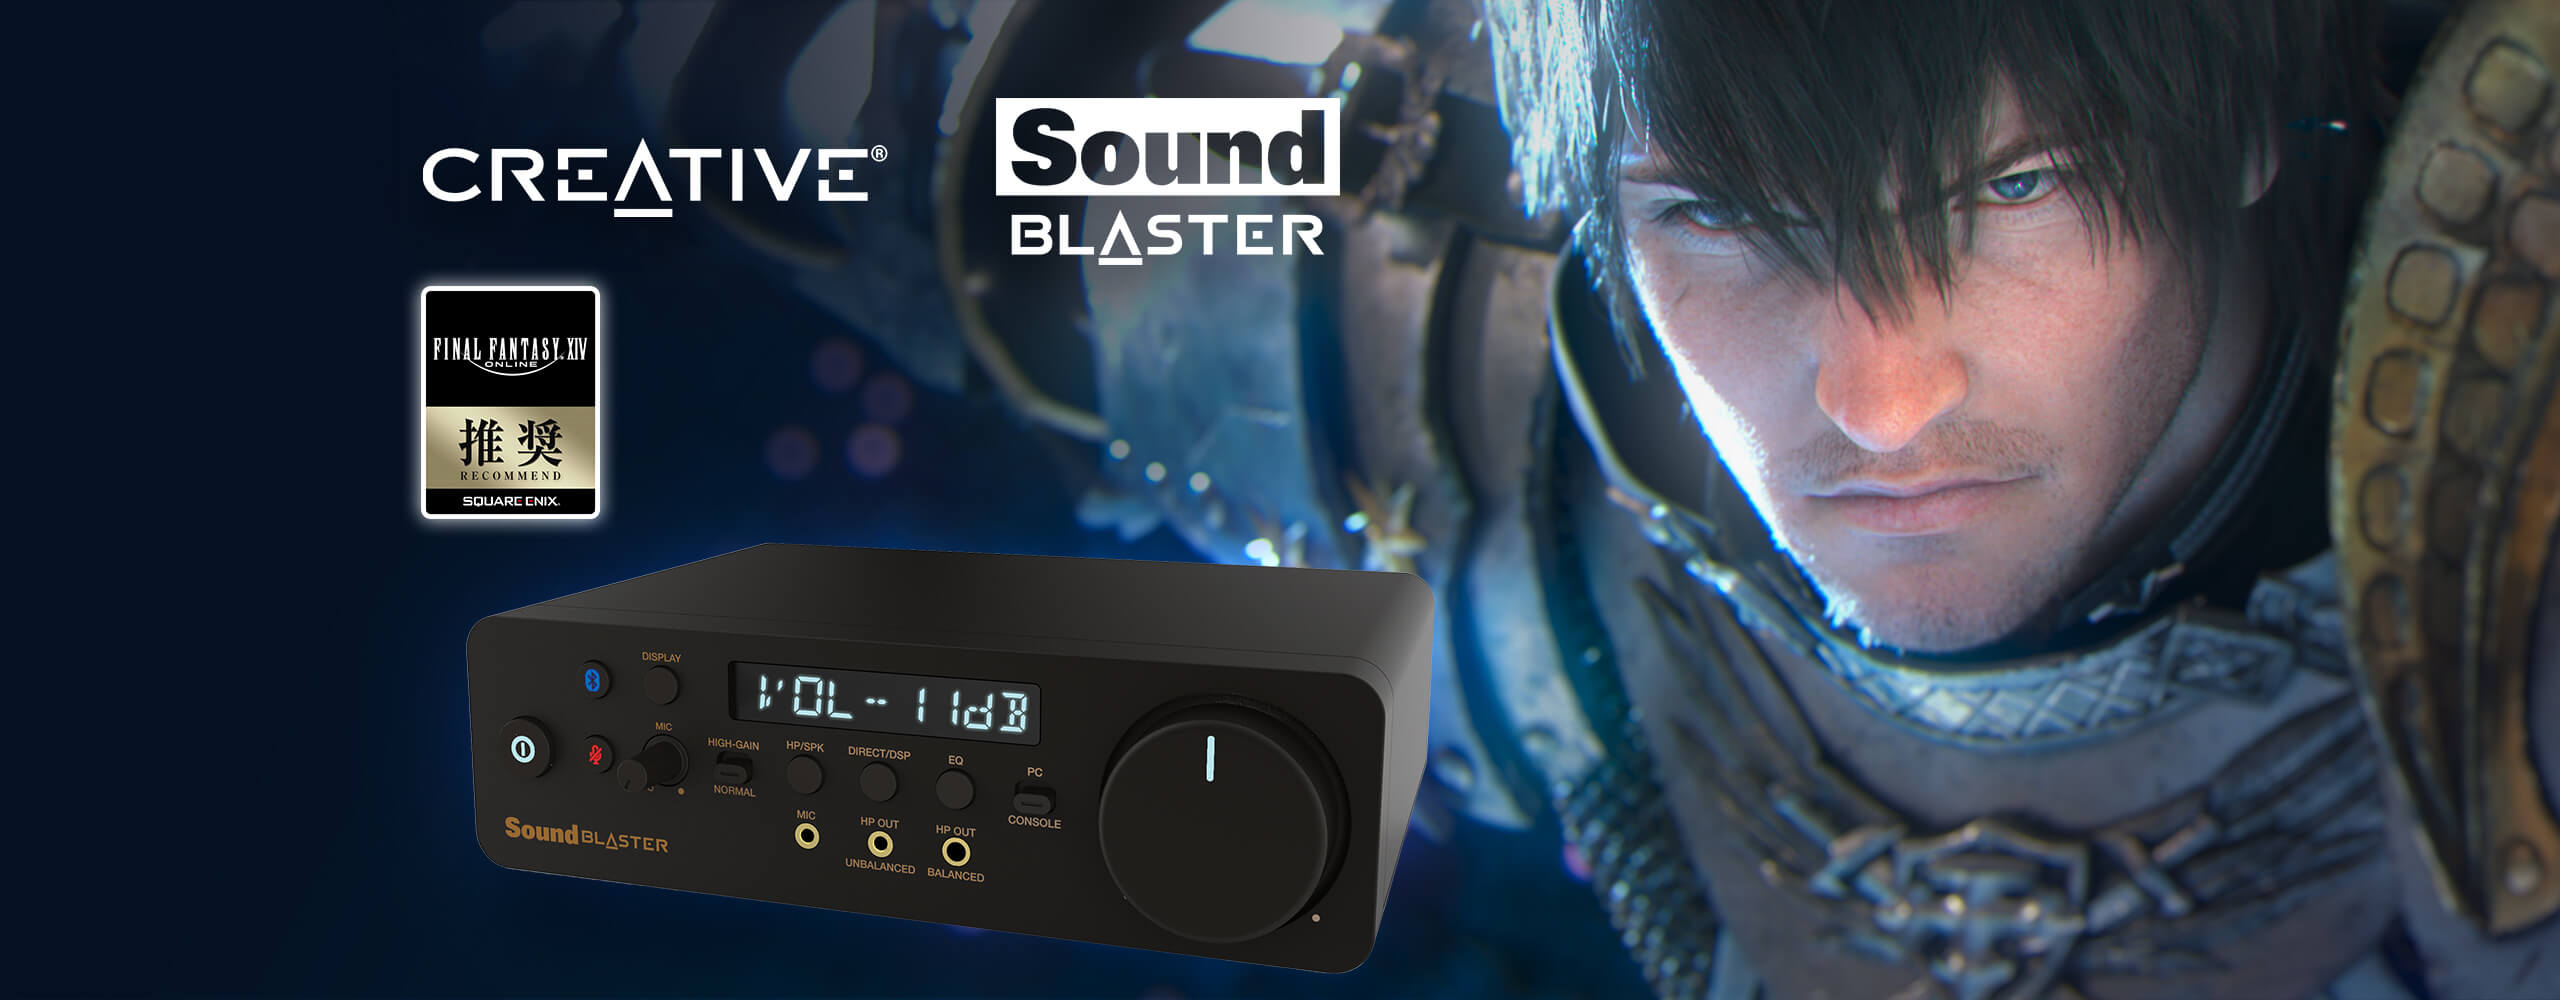 Sound Blaster GC7